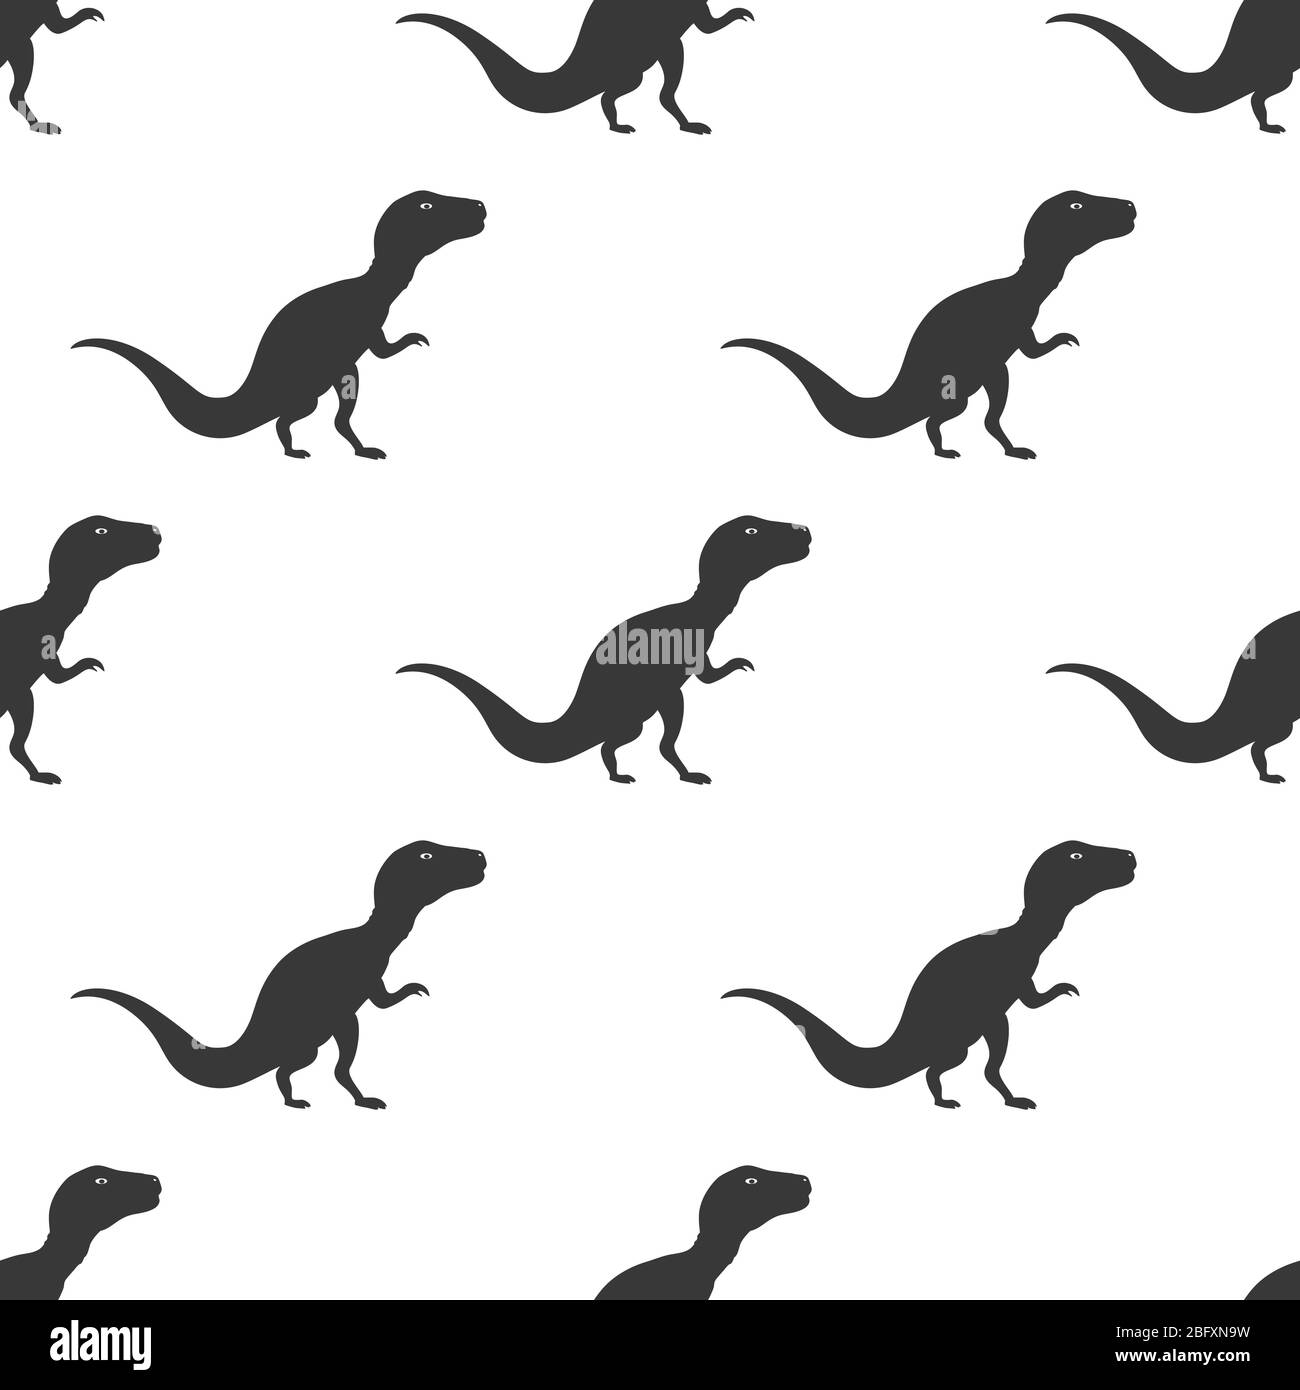 Velociraptor geometric. Vector illustration raptor dinosaur isolated on  black background. Dinosaur logo icon, Design element for logo, poster,  card, banner, emblem, t shirt. Vector illustration 7270733 Vector Art at  Vecteezy